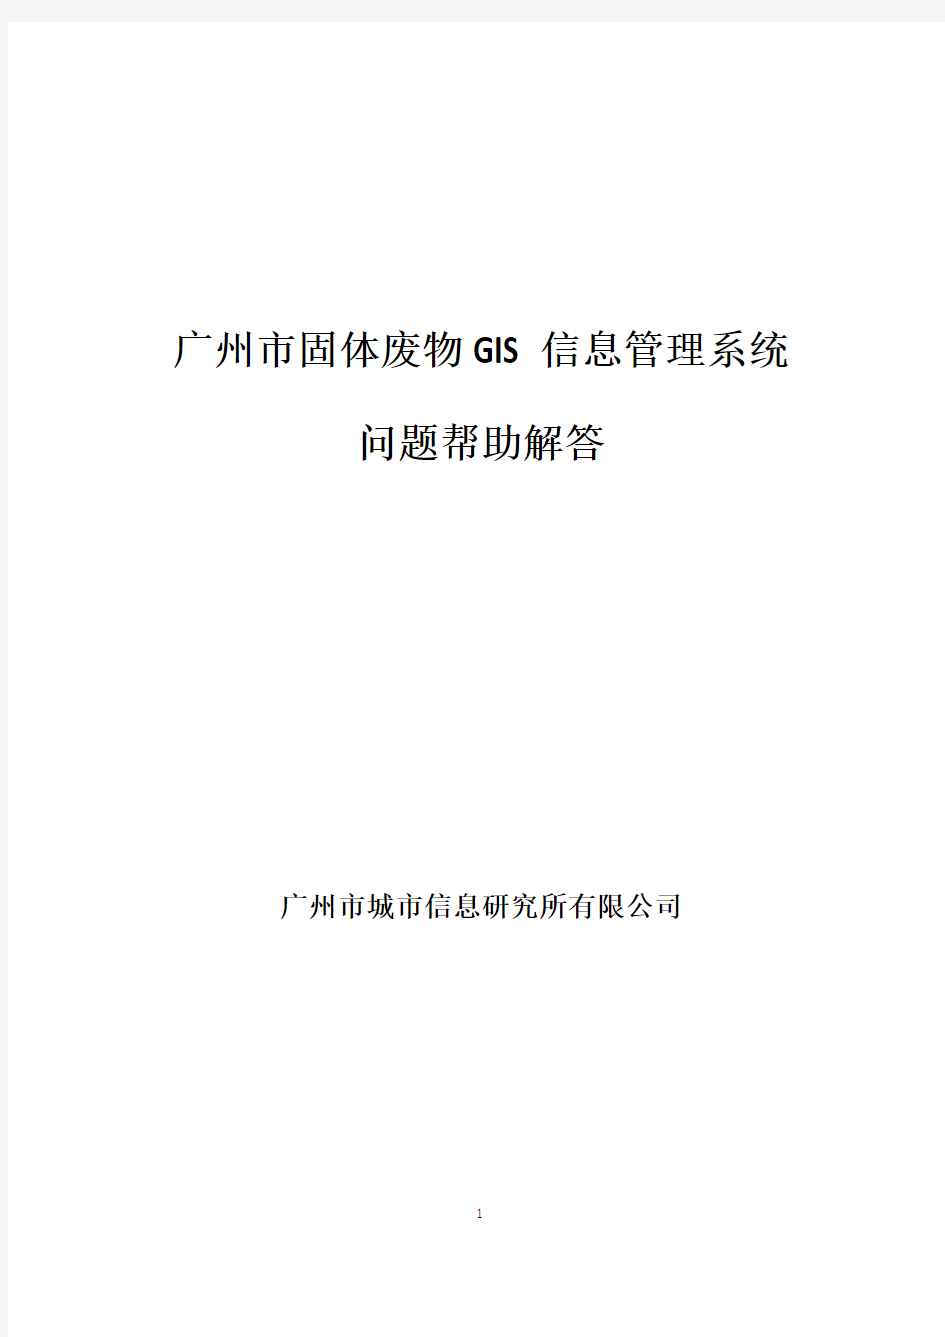 广州固废GIS系统--疑难和解决方法(20130329)